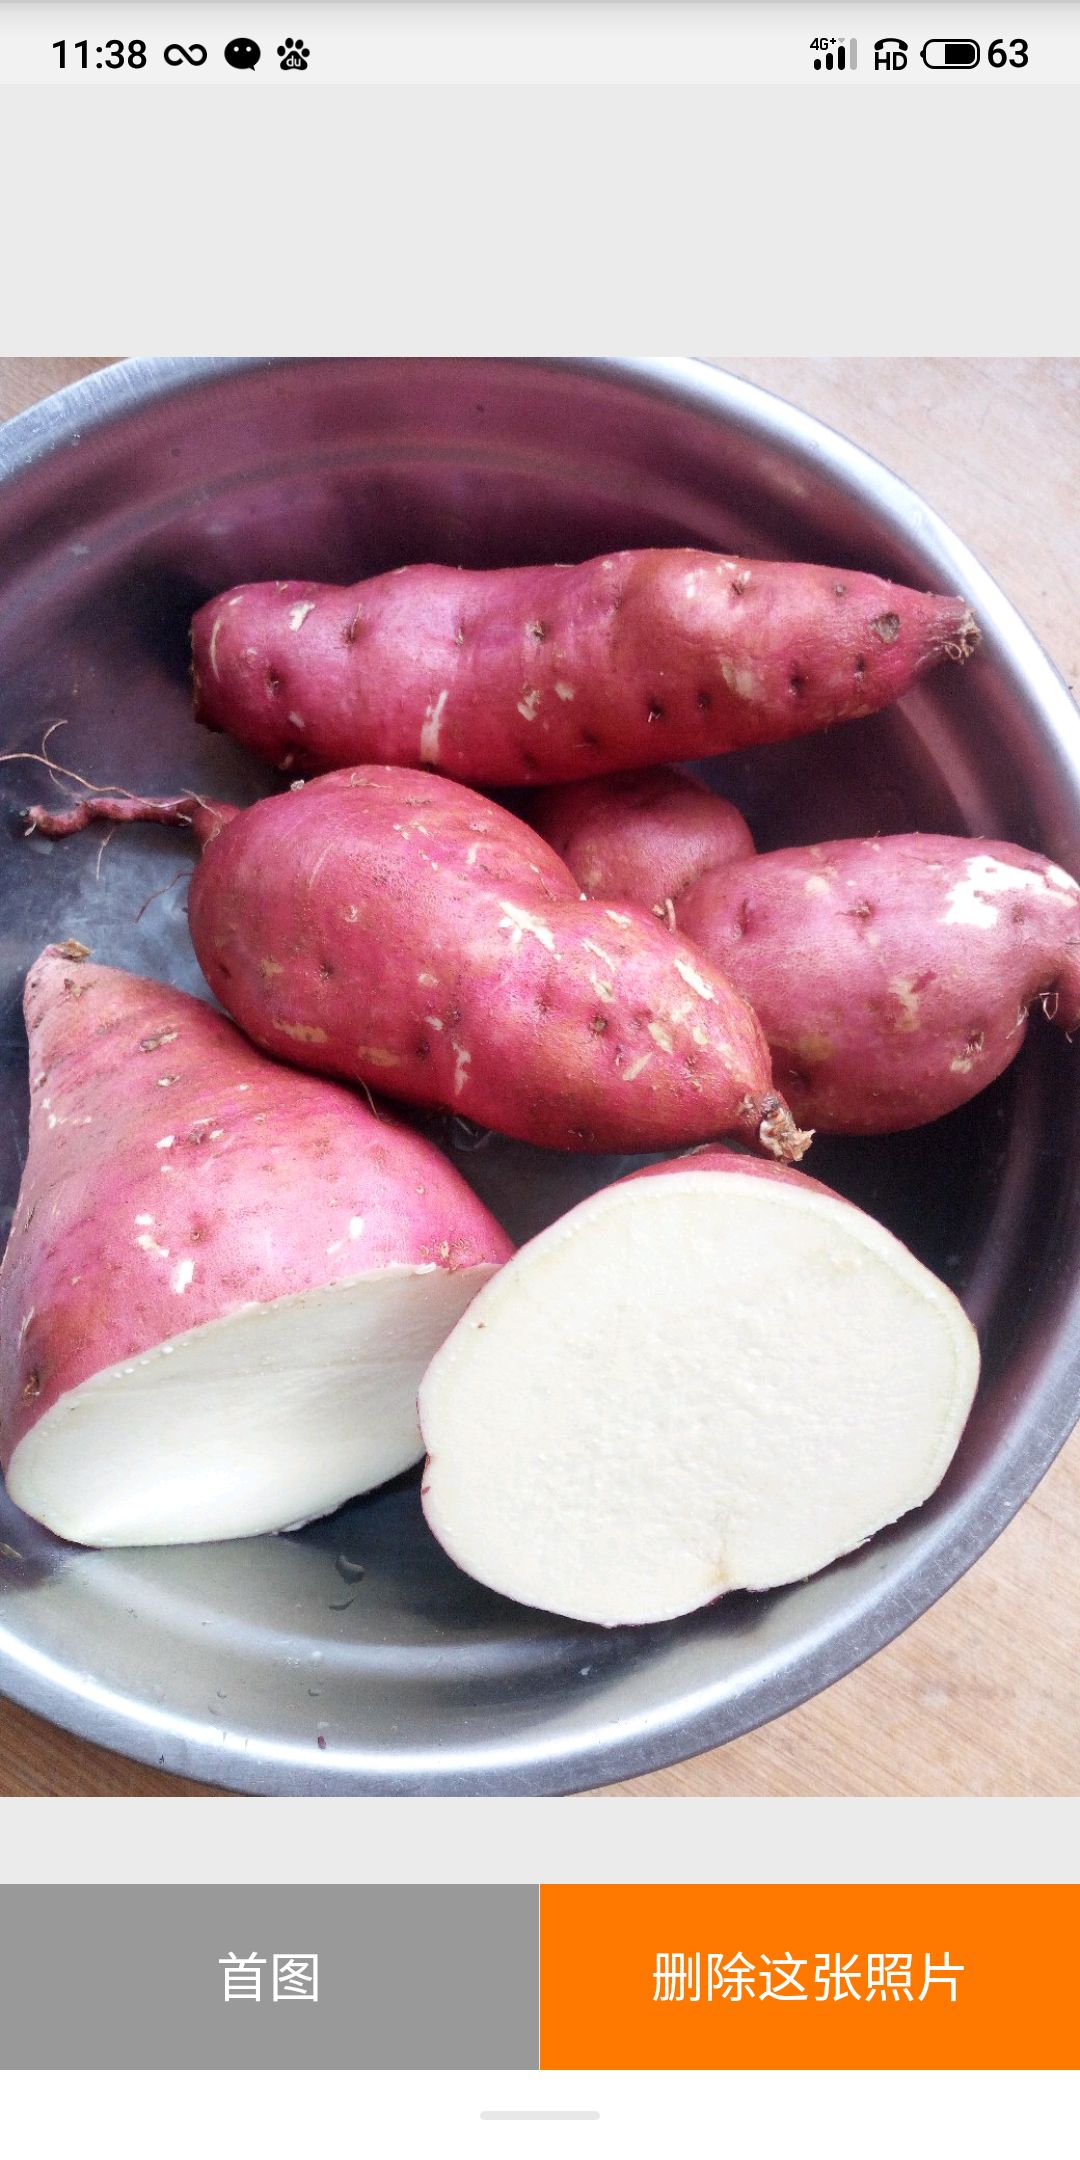 西瓜红,红皮白心徐薯18商品红薯.